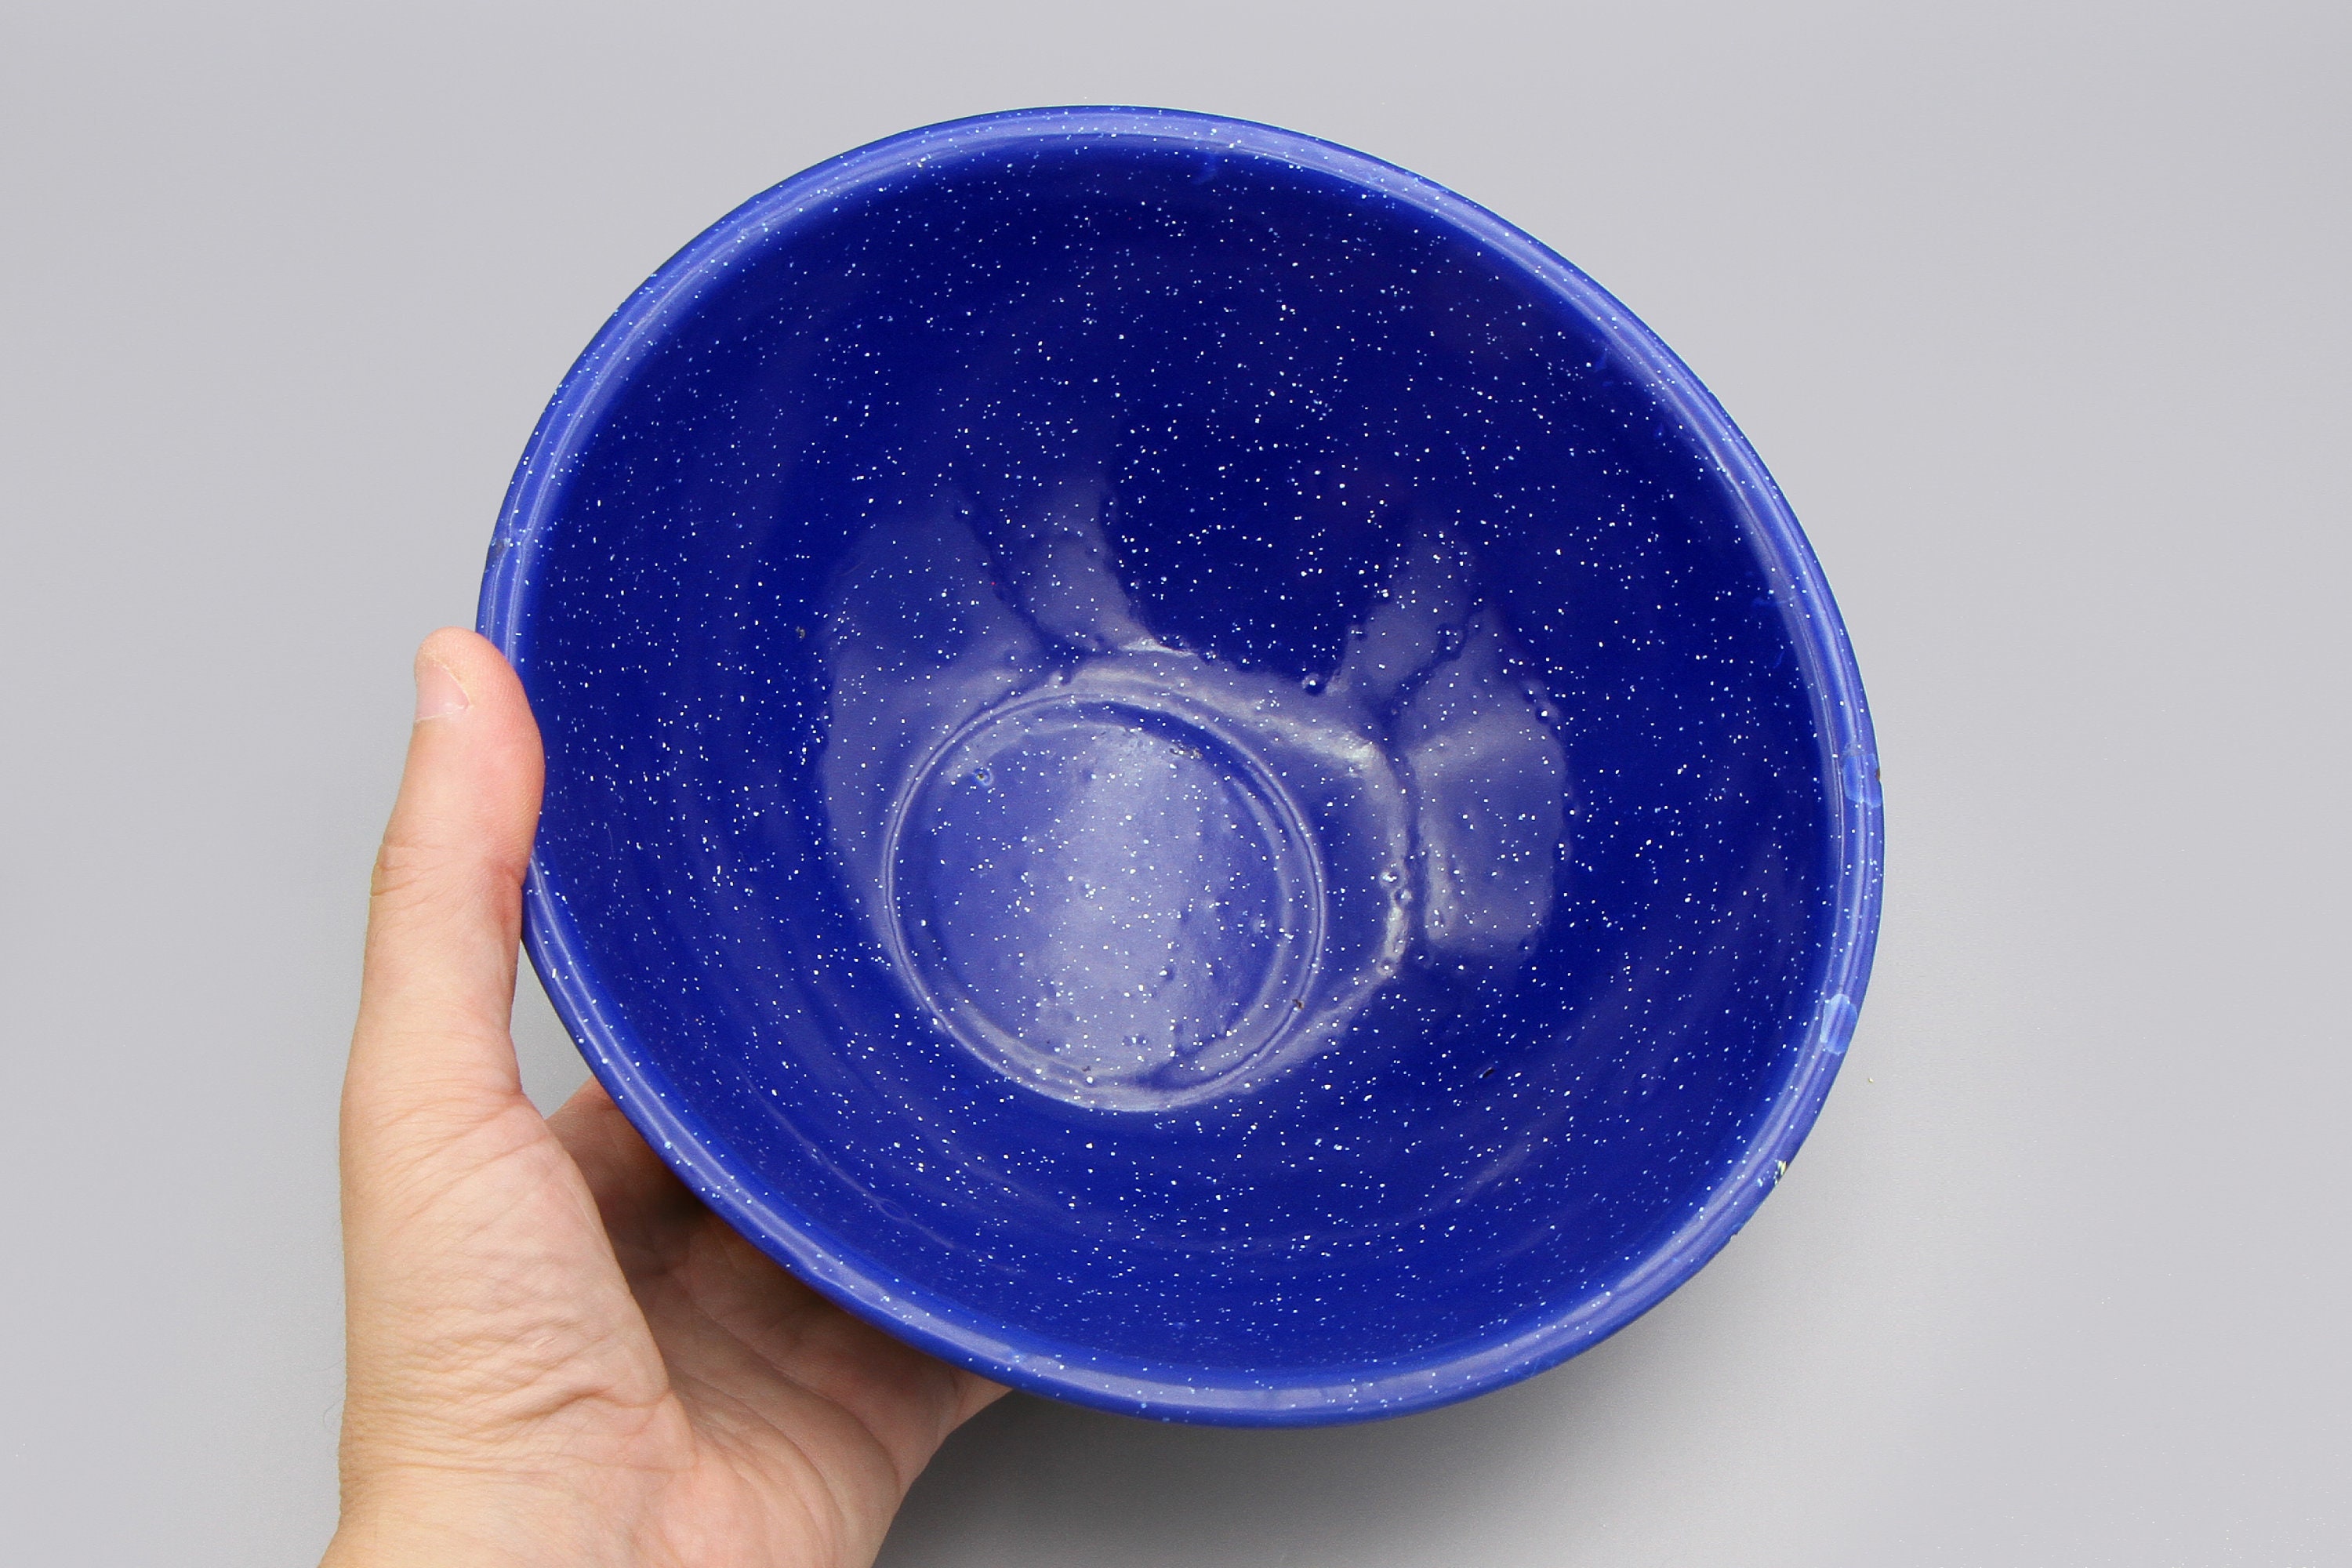 Vintage Enamel Mixing Bowl / Blue Enamelware Mixing Bowl / 6 Quart